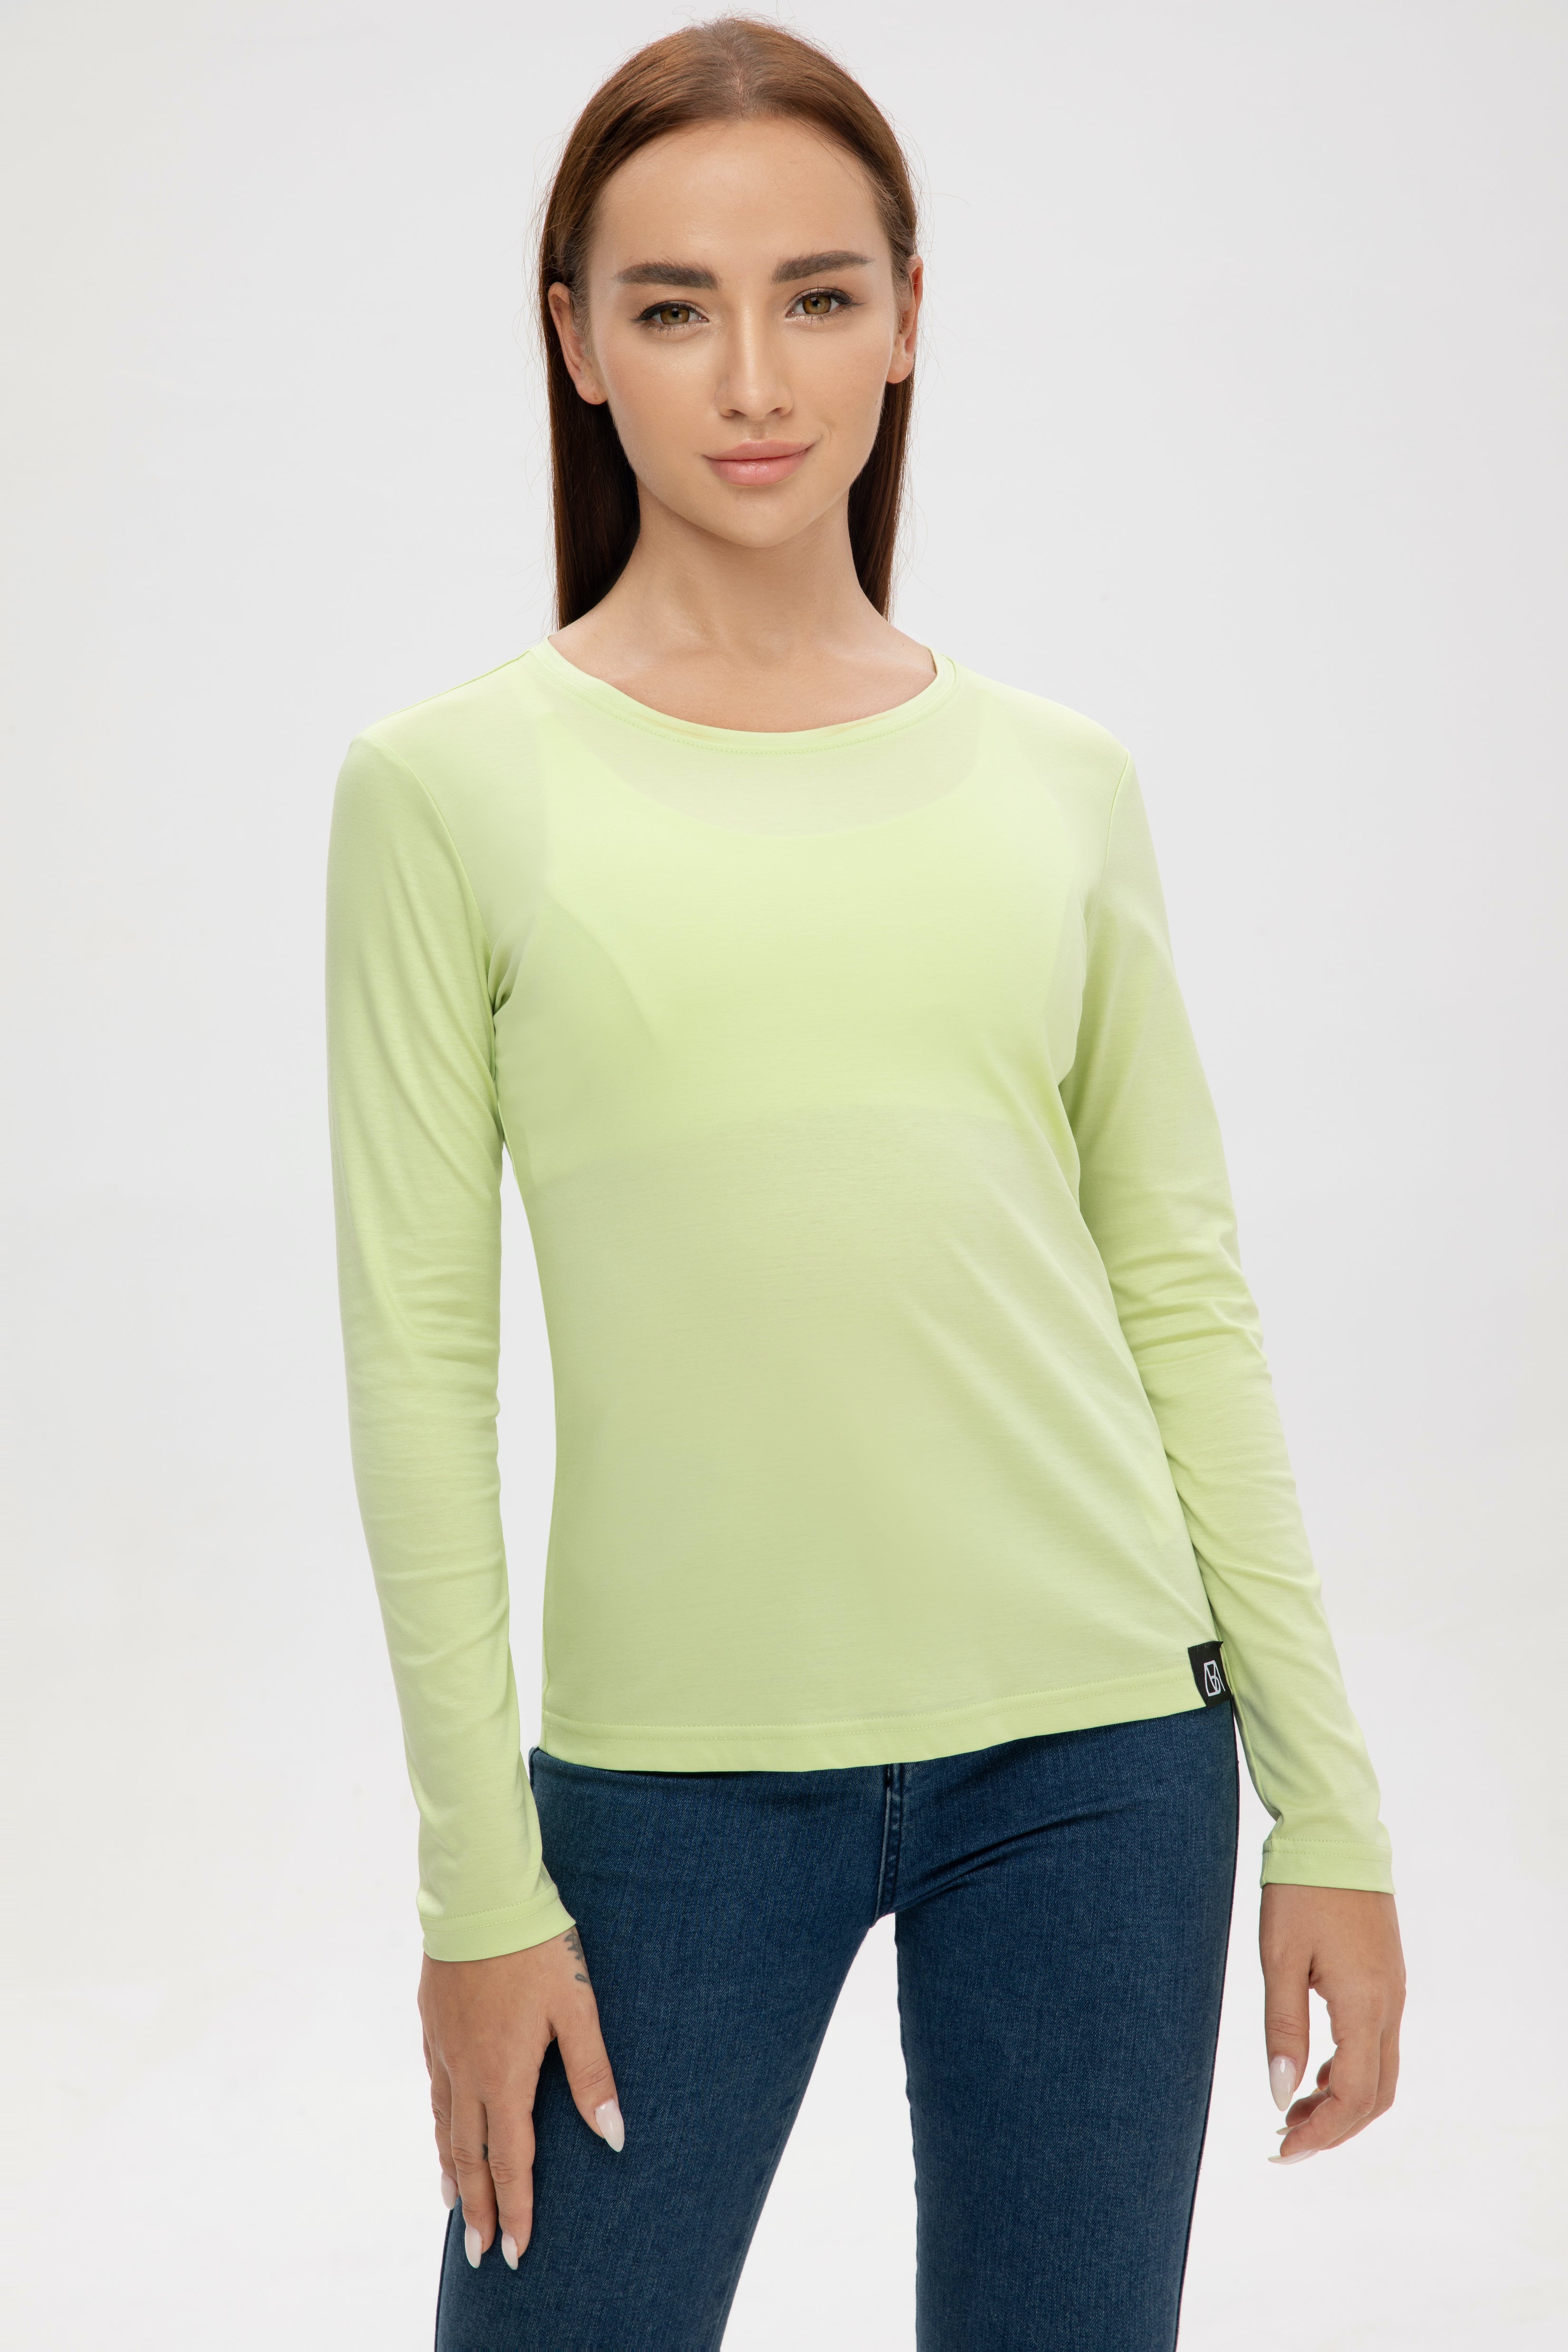 Women Tops/ Mercerized Cotton/ Long sleeves